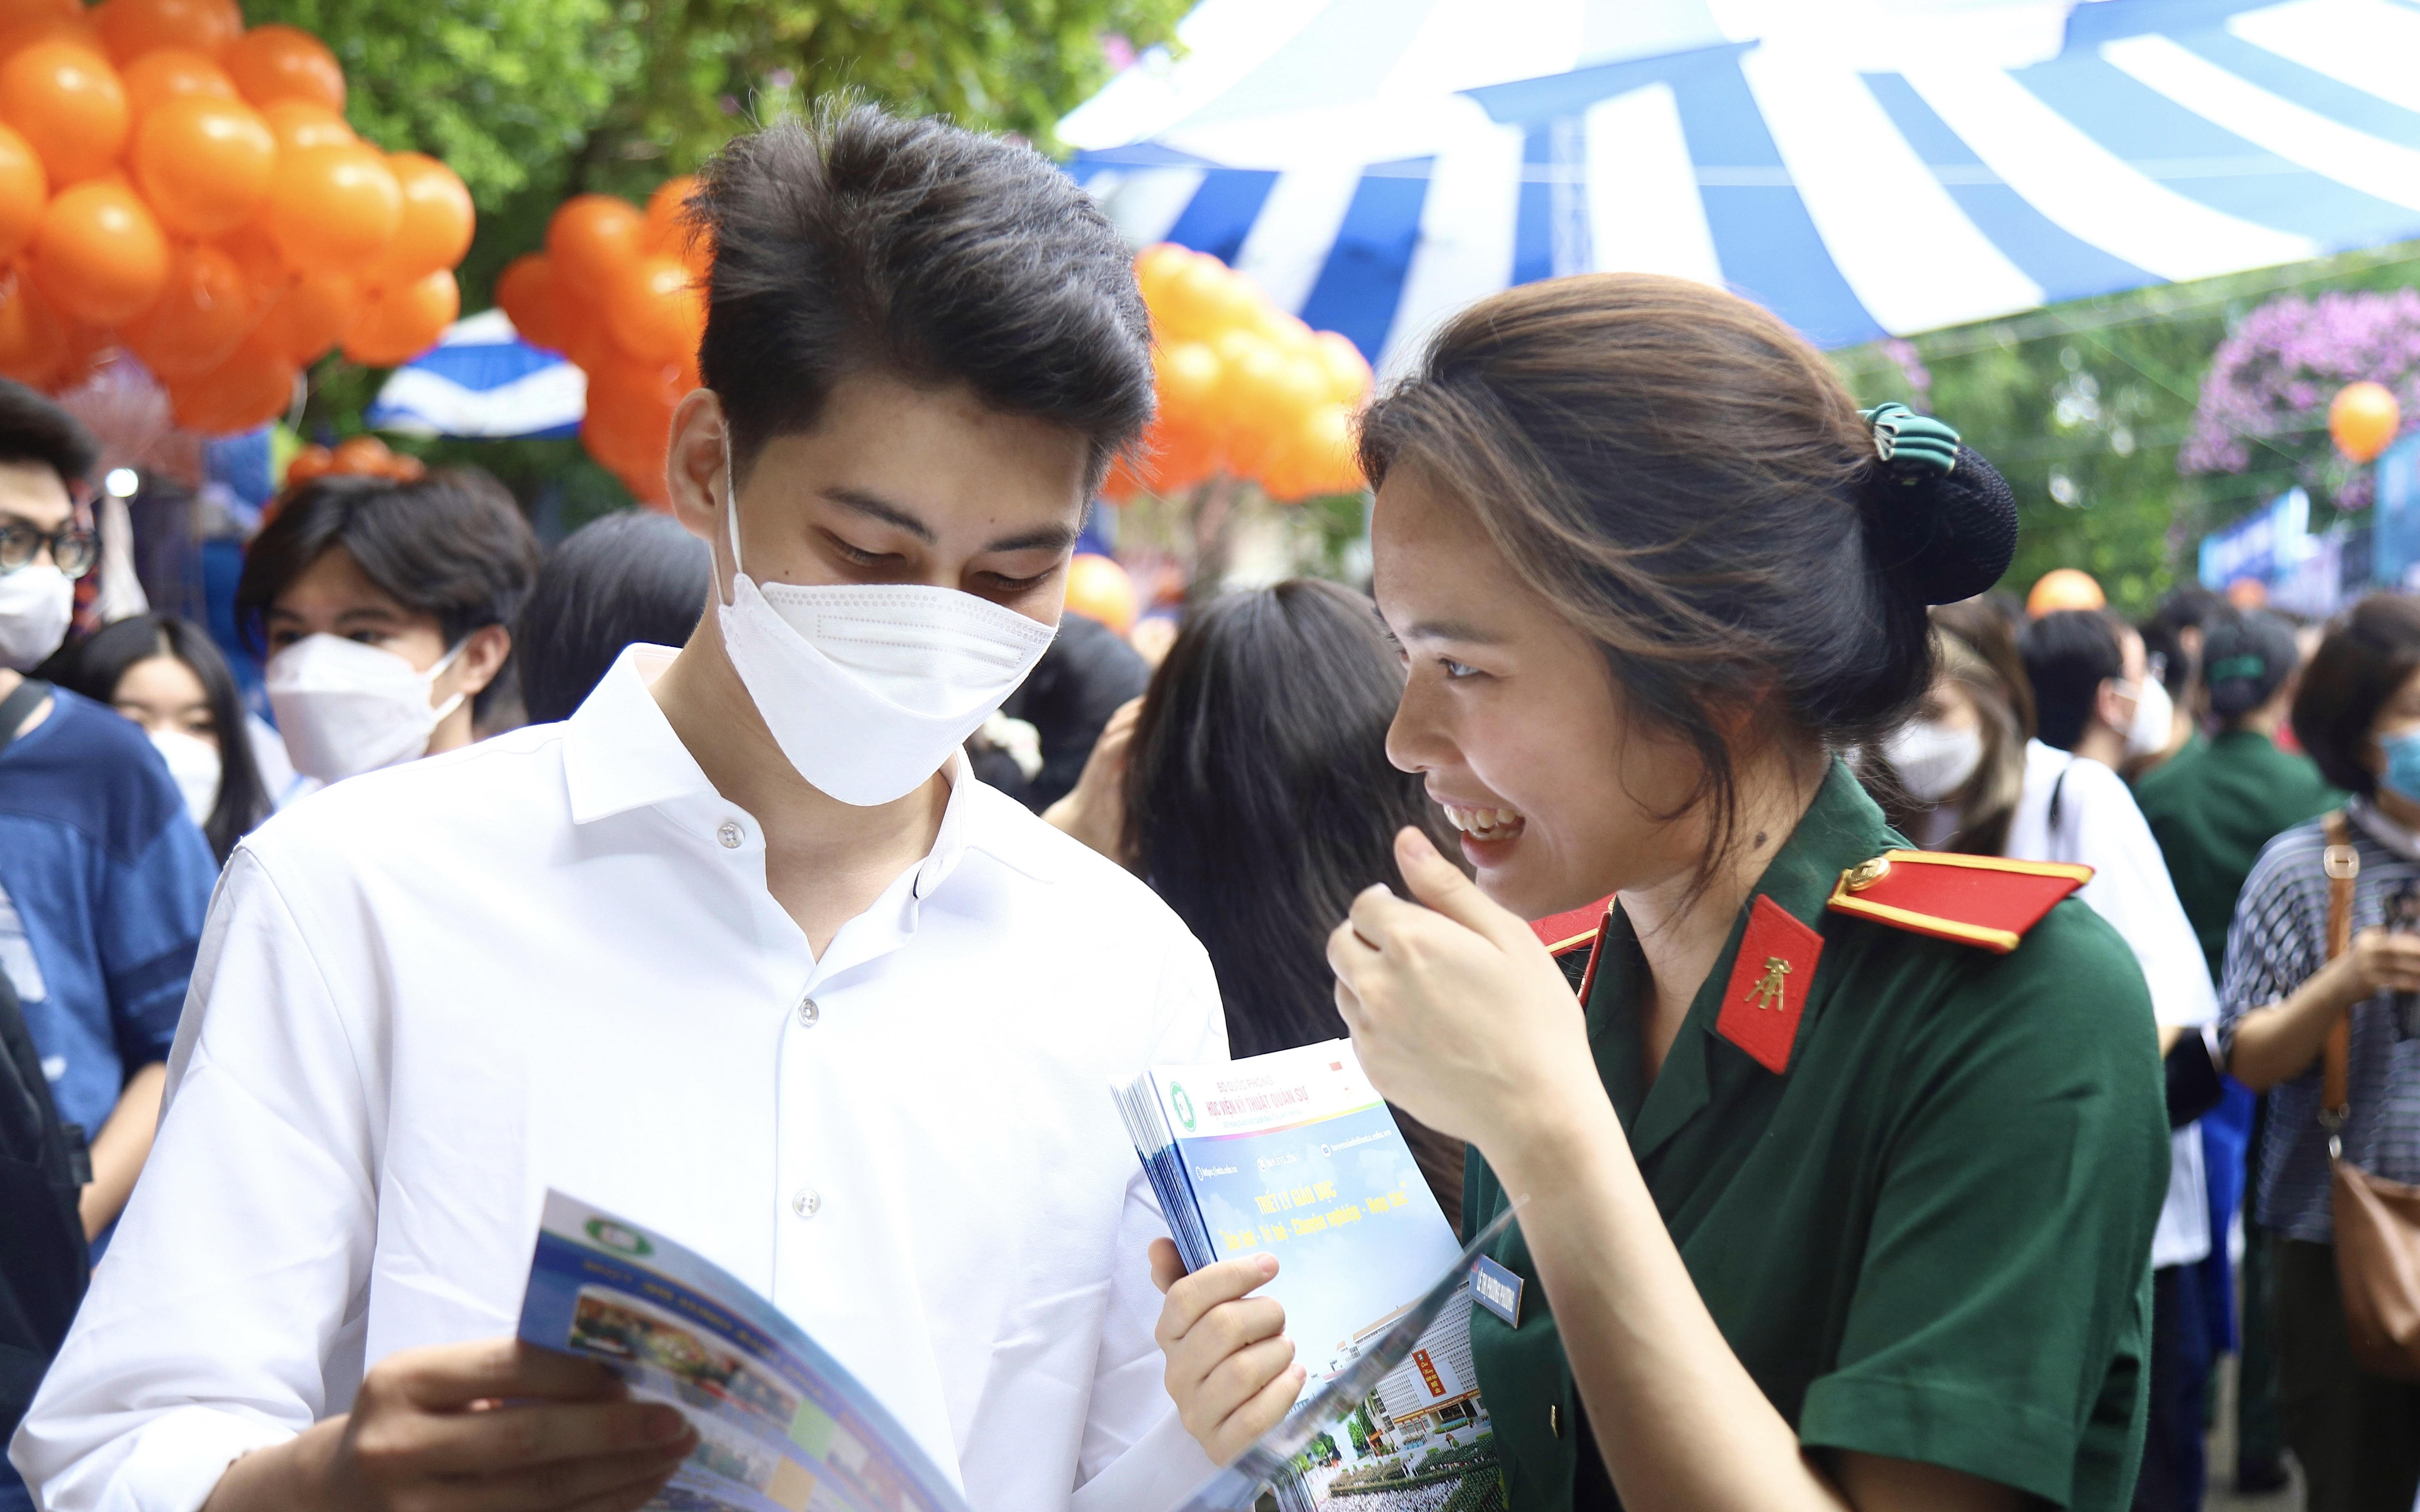 Thí sinh muốn dự thi đánh giá năng lực của Đại học Quốc gia Hà Nội đăng ký thế nào?